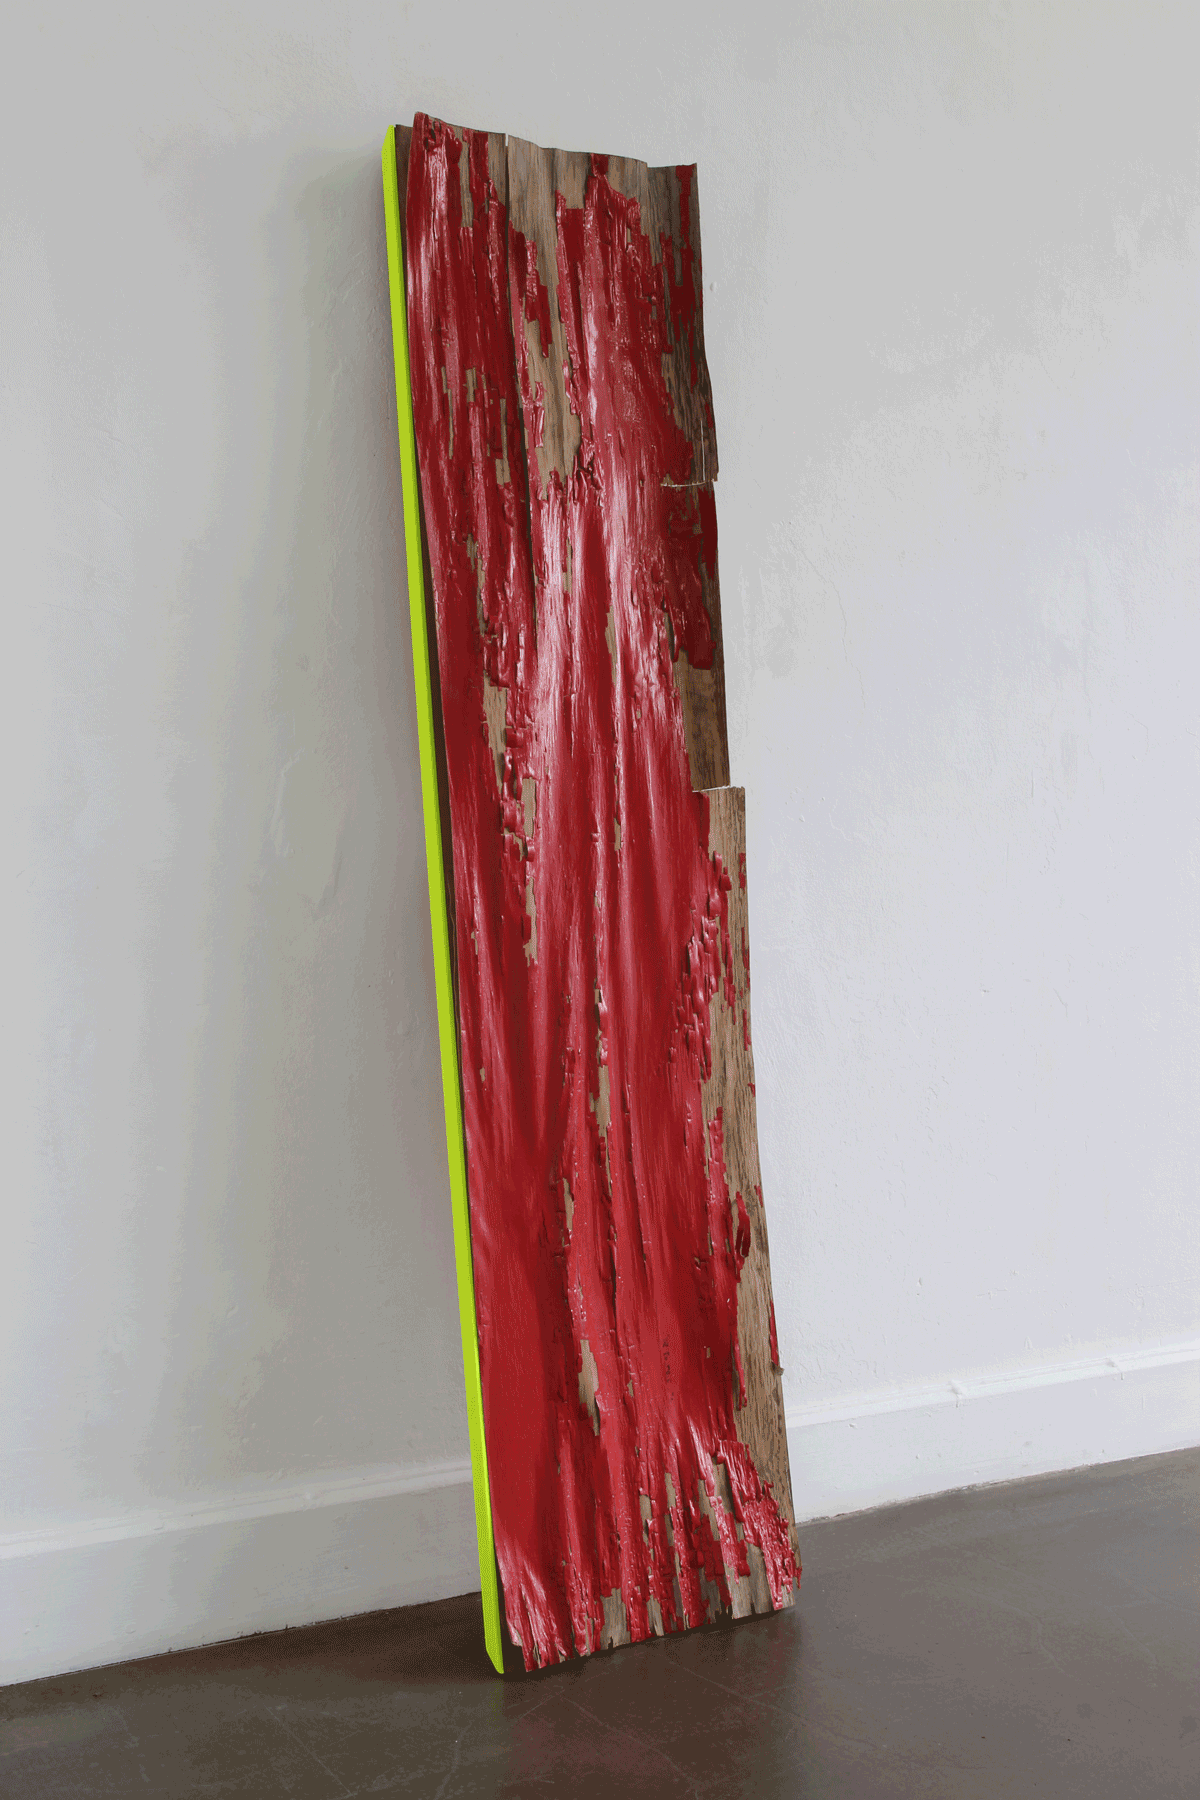 Ohne Titel, 2019
Fundstück, Acrylfarbe, Spiegelfolie 170 x 40 x 10 cm